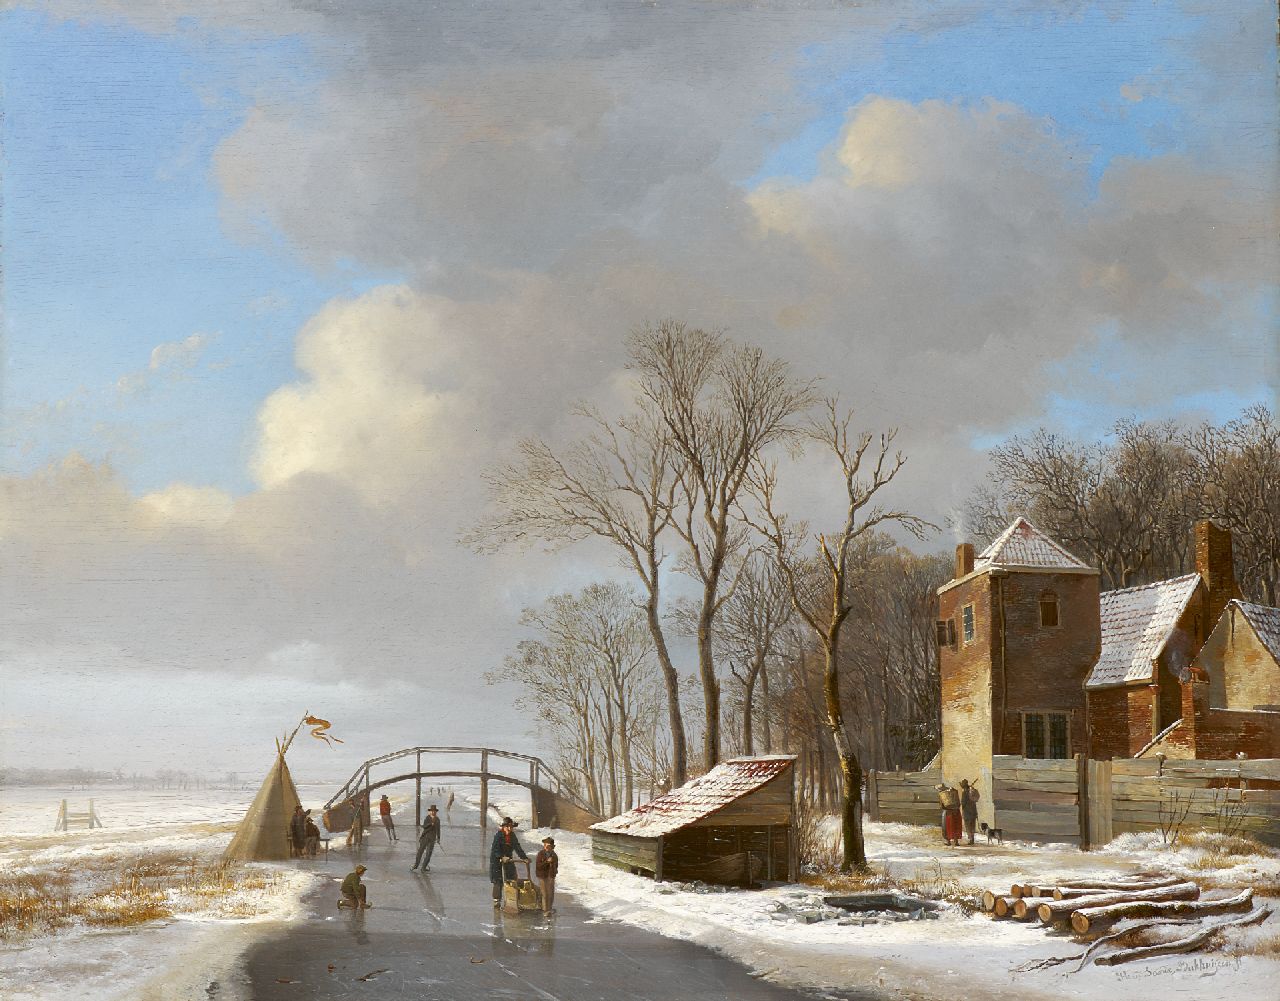 Sande Bakhuyzen H. van de | Hendrikus van de Sande Bakhuyzen, Skaters on frozen canal, oil on panel 40.4 x 51.0 cm, signed l.r.